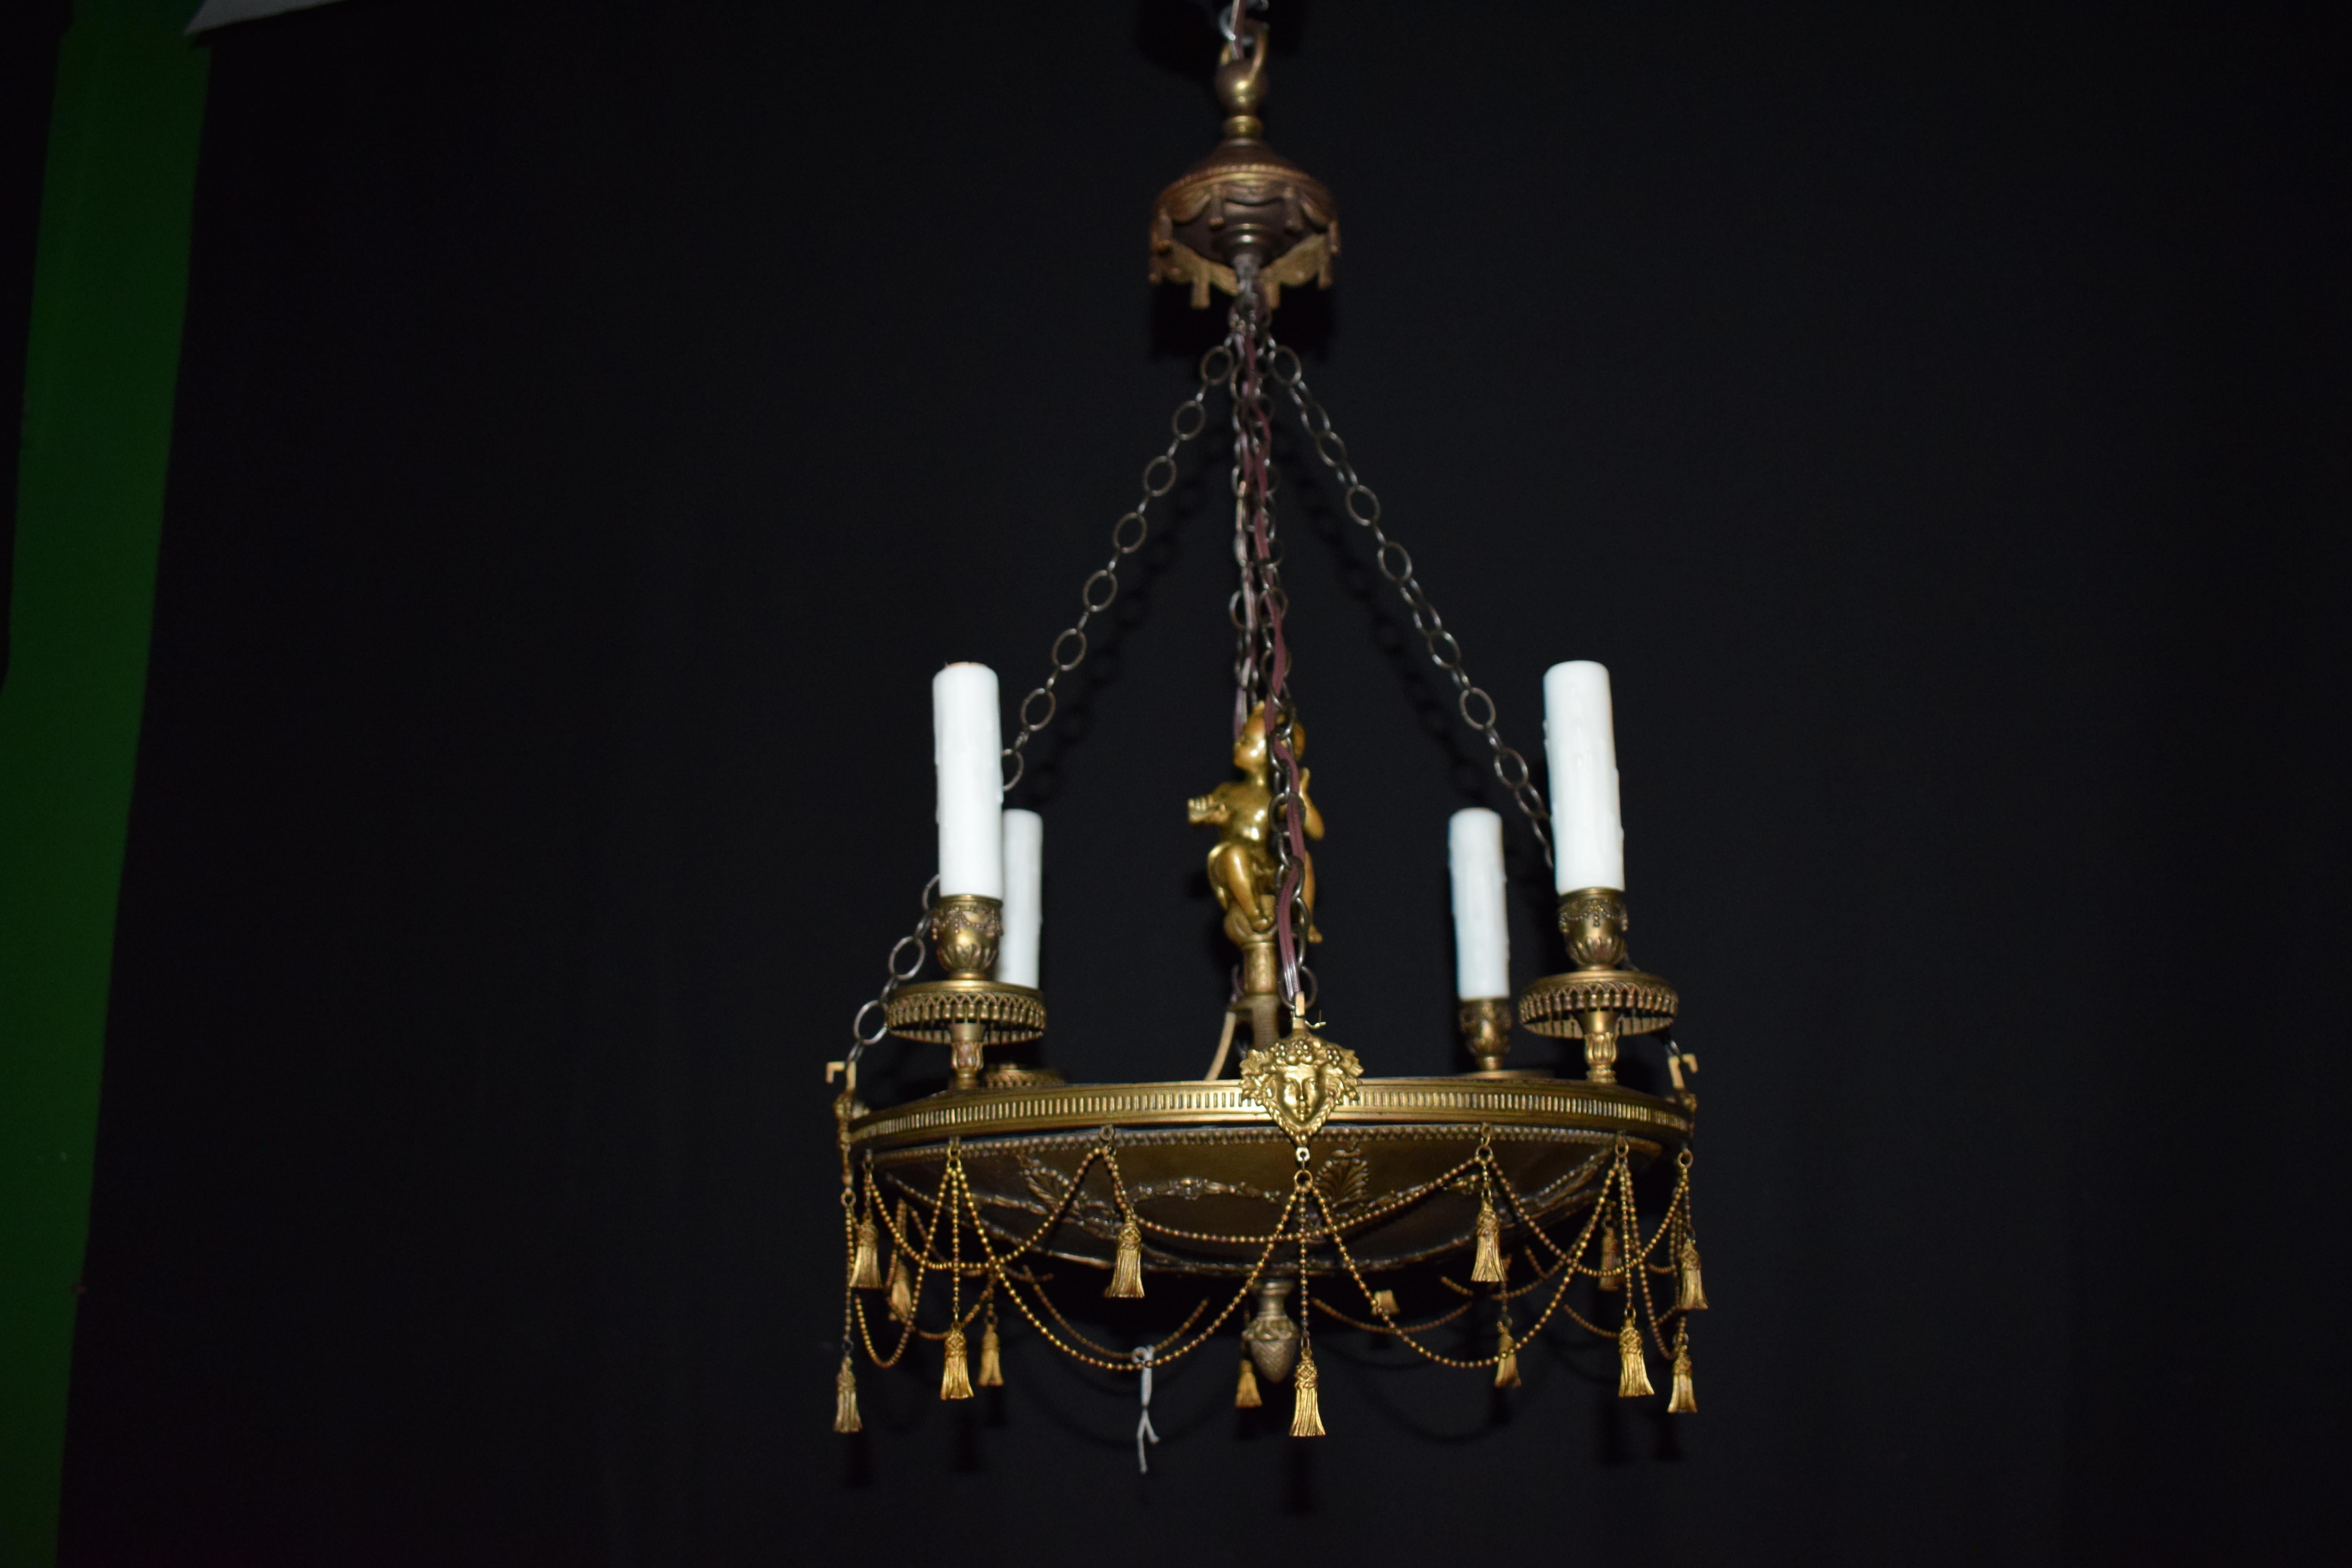 Un très élégant lustre de style empire en bronze doré. Détail exquis. 4 lumières.
France, vers 1920. Mesures : Hauteur 27 1/2